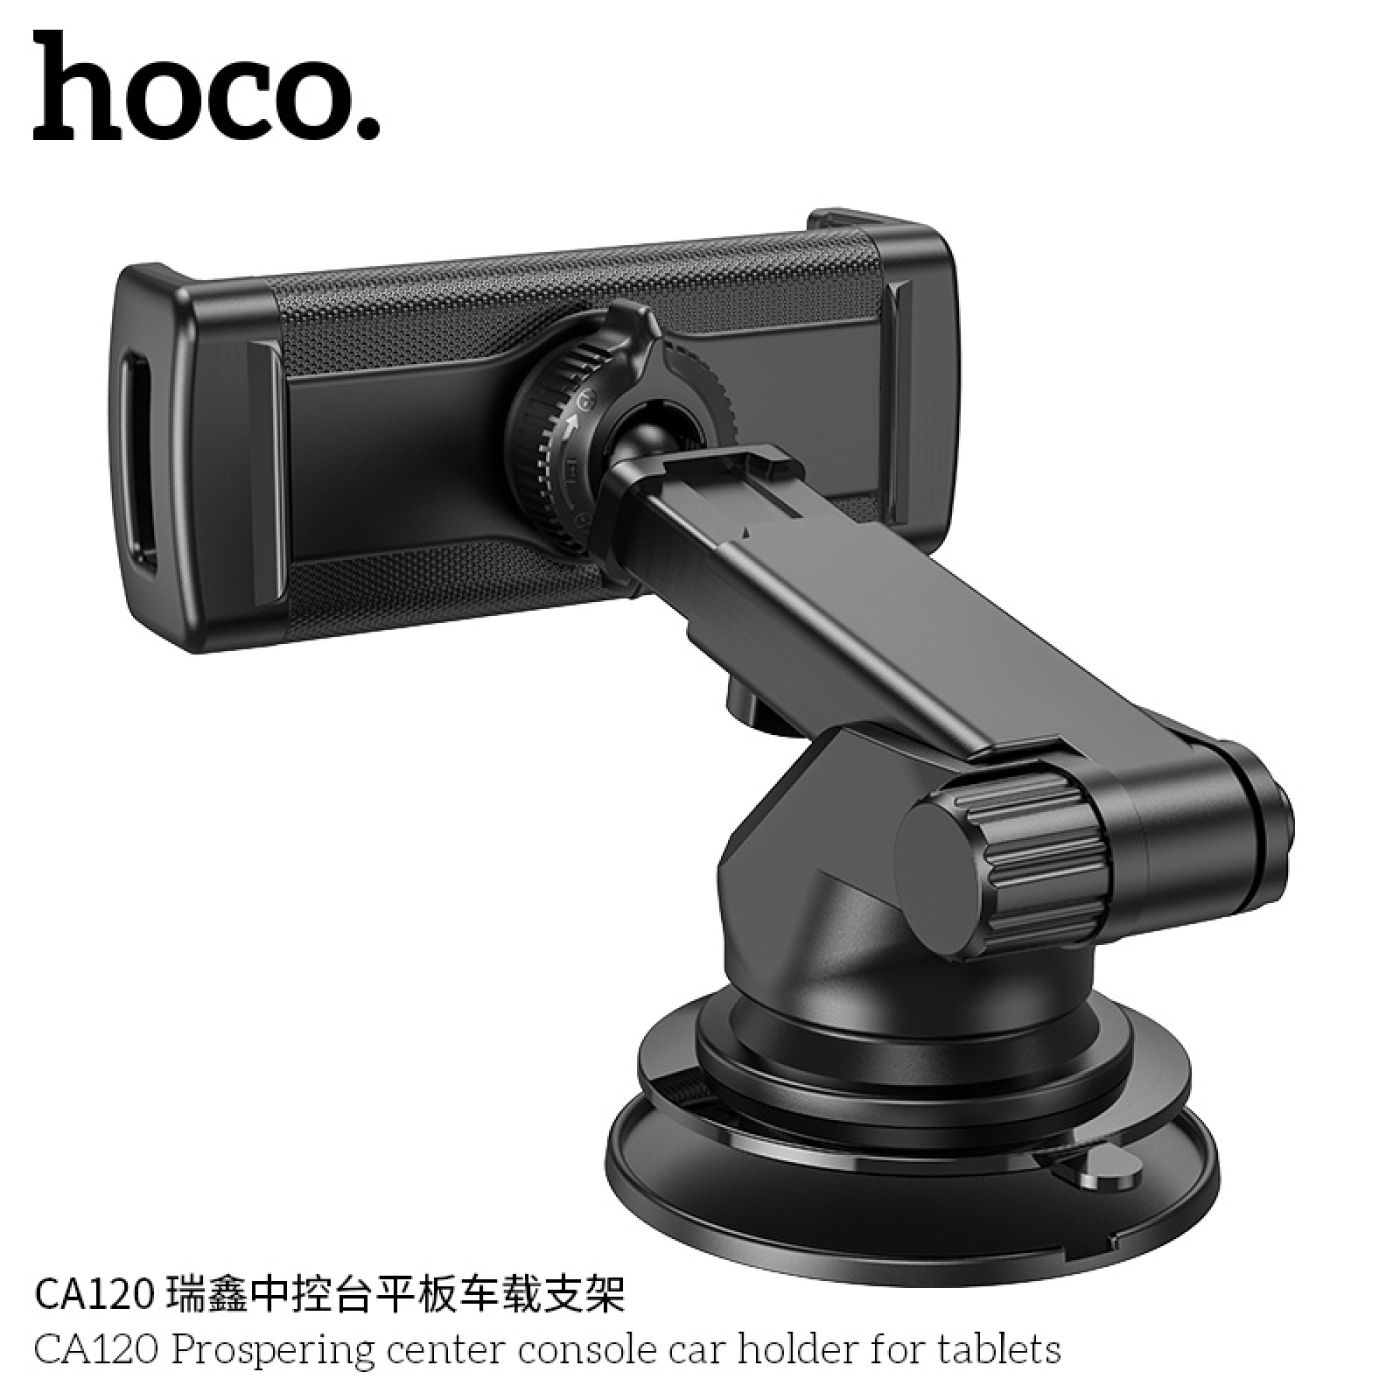 Giá đỡ điện thoại, máy tính bảng 4,7-10.5 inches Hoco CA120 để trên ô tô chuyển gắn tap lô và kính